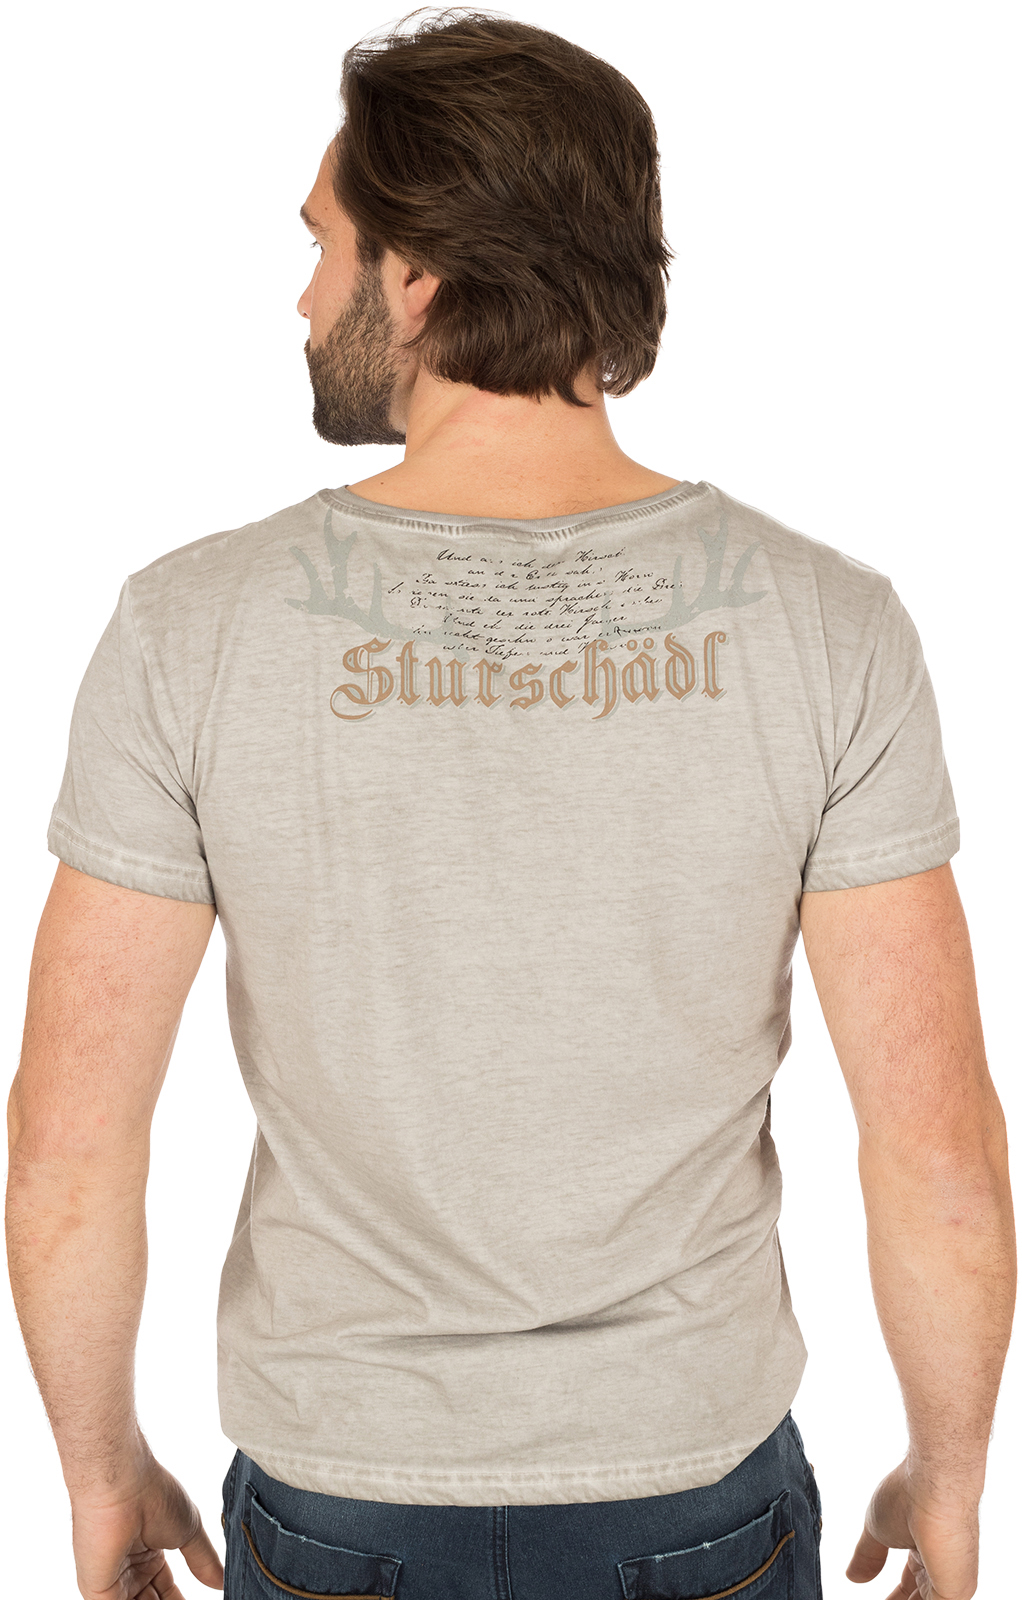 weitere Bilder von Trachten T-Shirt STURSCHAEDL bruin